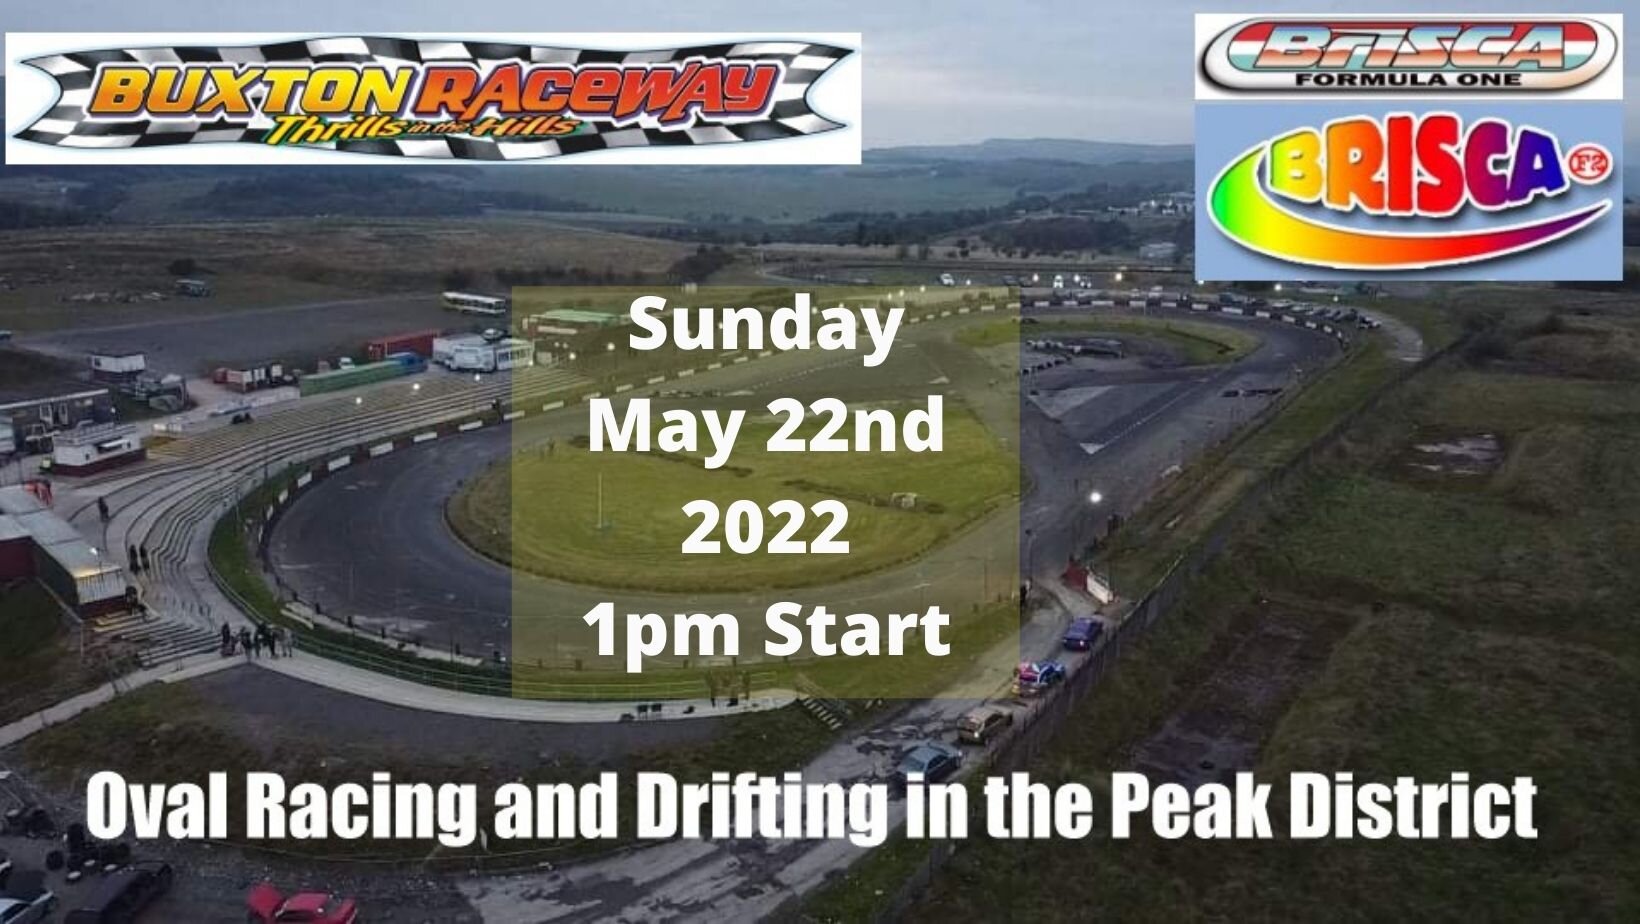 Buxton Raceway | Sunday 22nd May 1pm